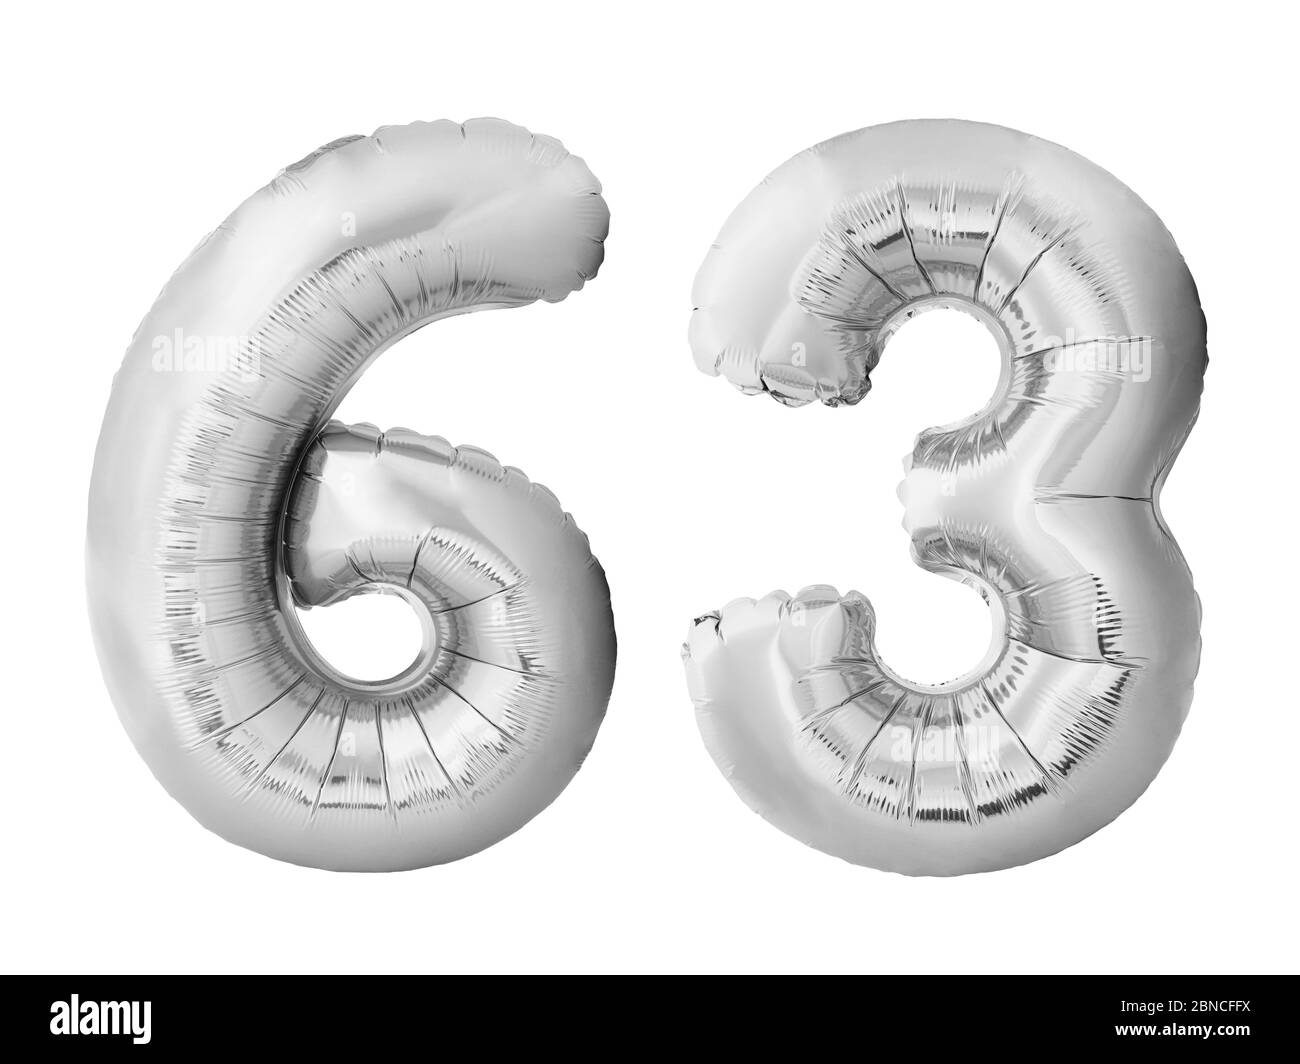 Numéro 63 soixante trois ballons gonflables en argent isolés sur fond blanc Banque D'Images